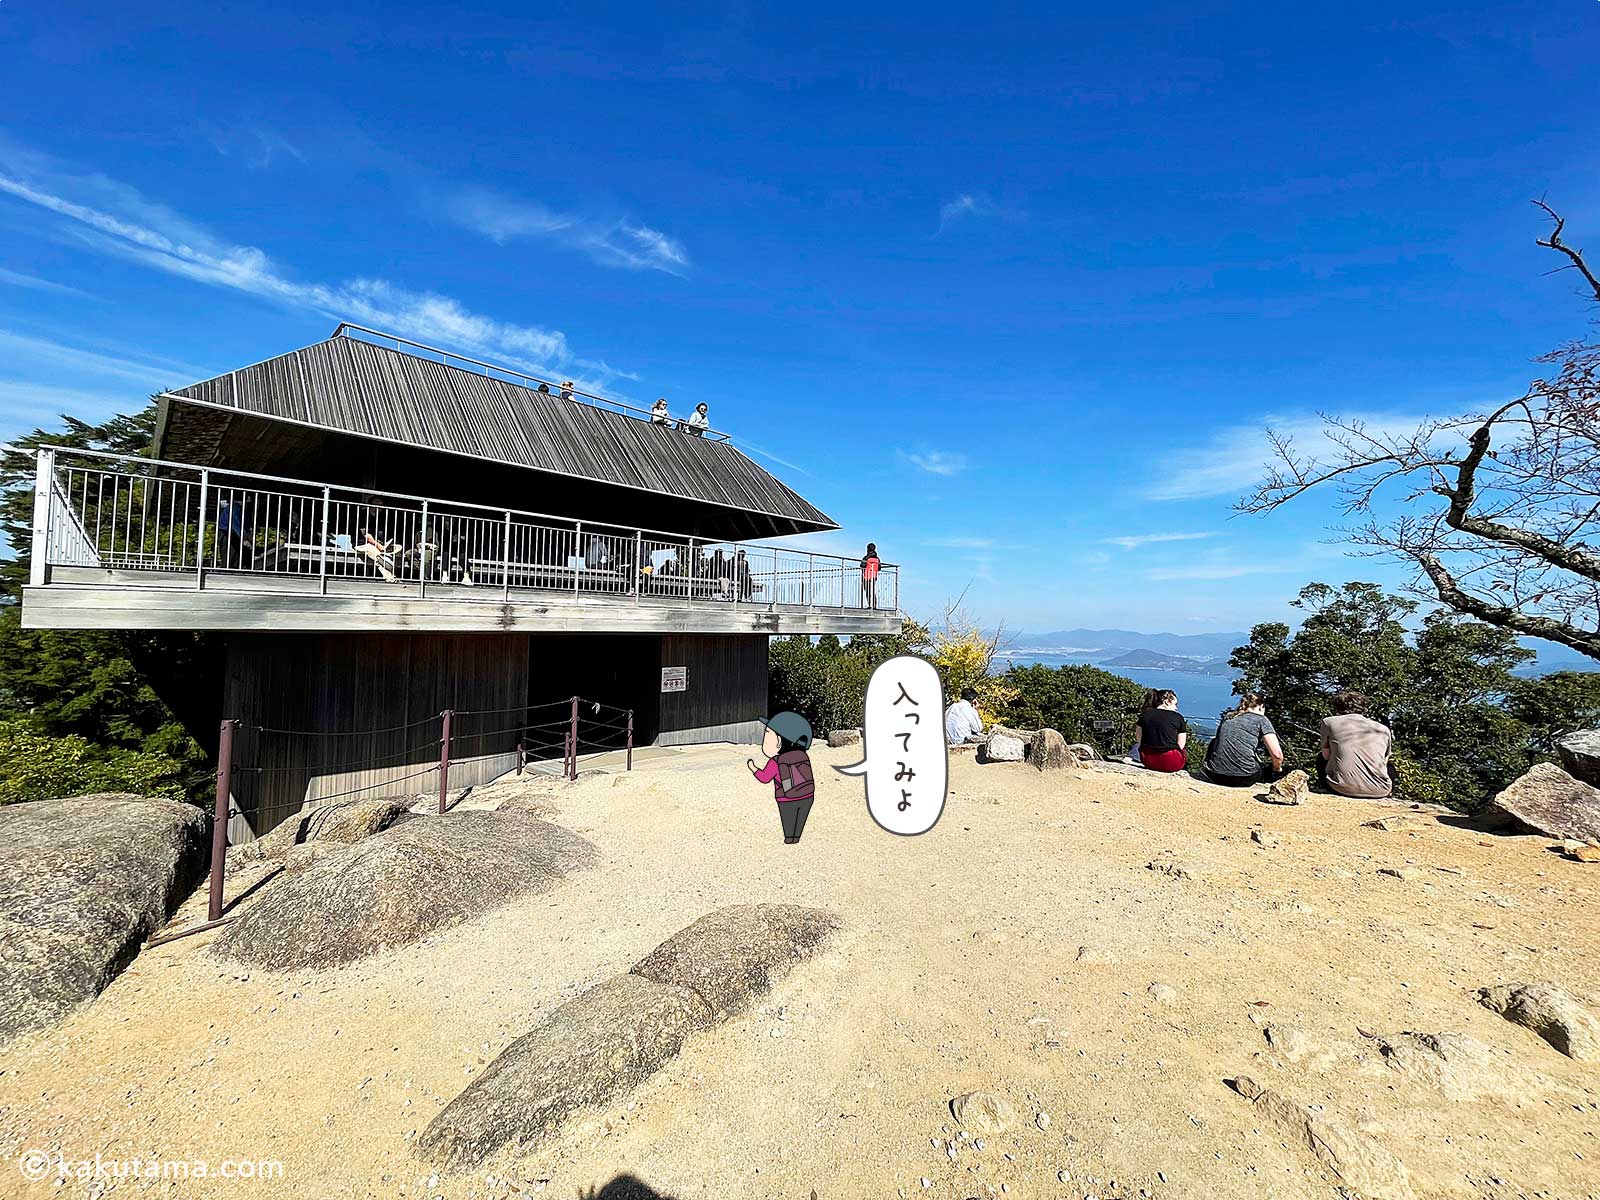 弥山山頂展望台の写真と登山者のイラスト